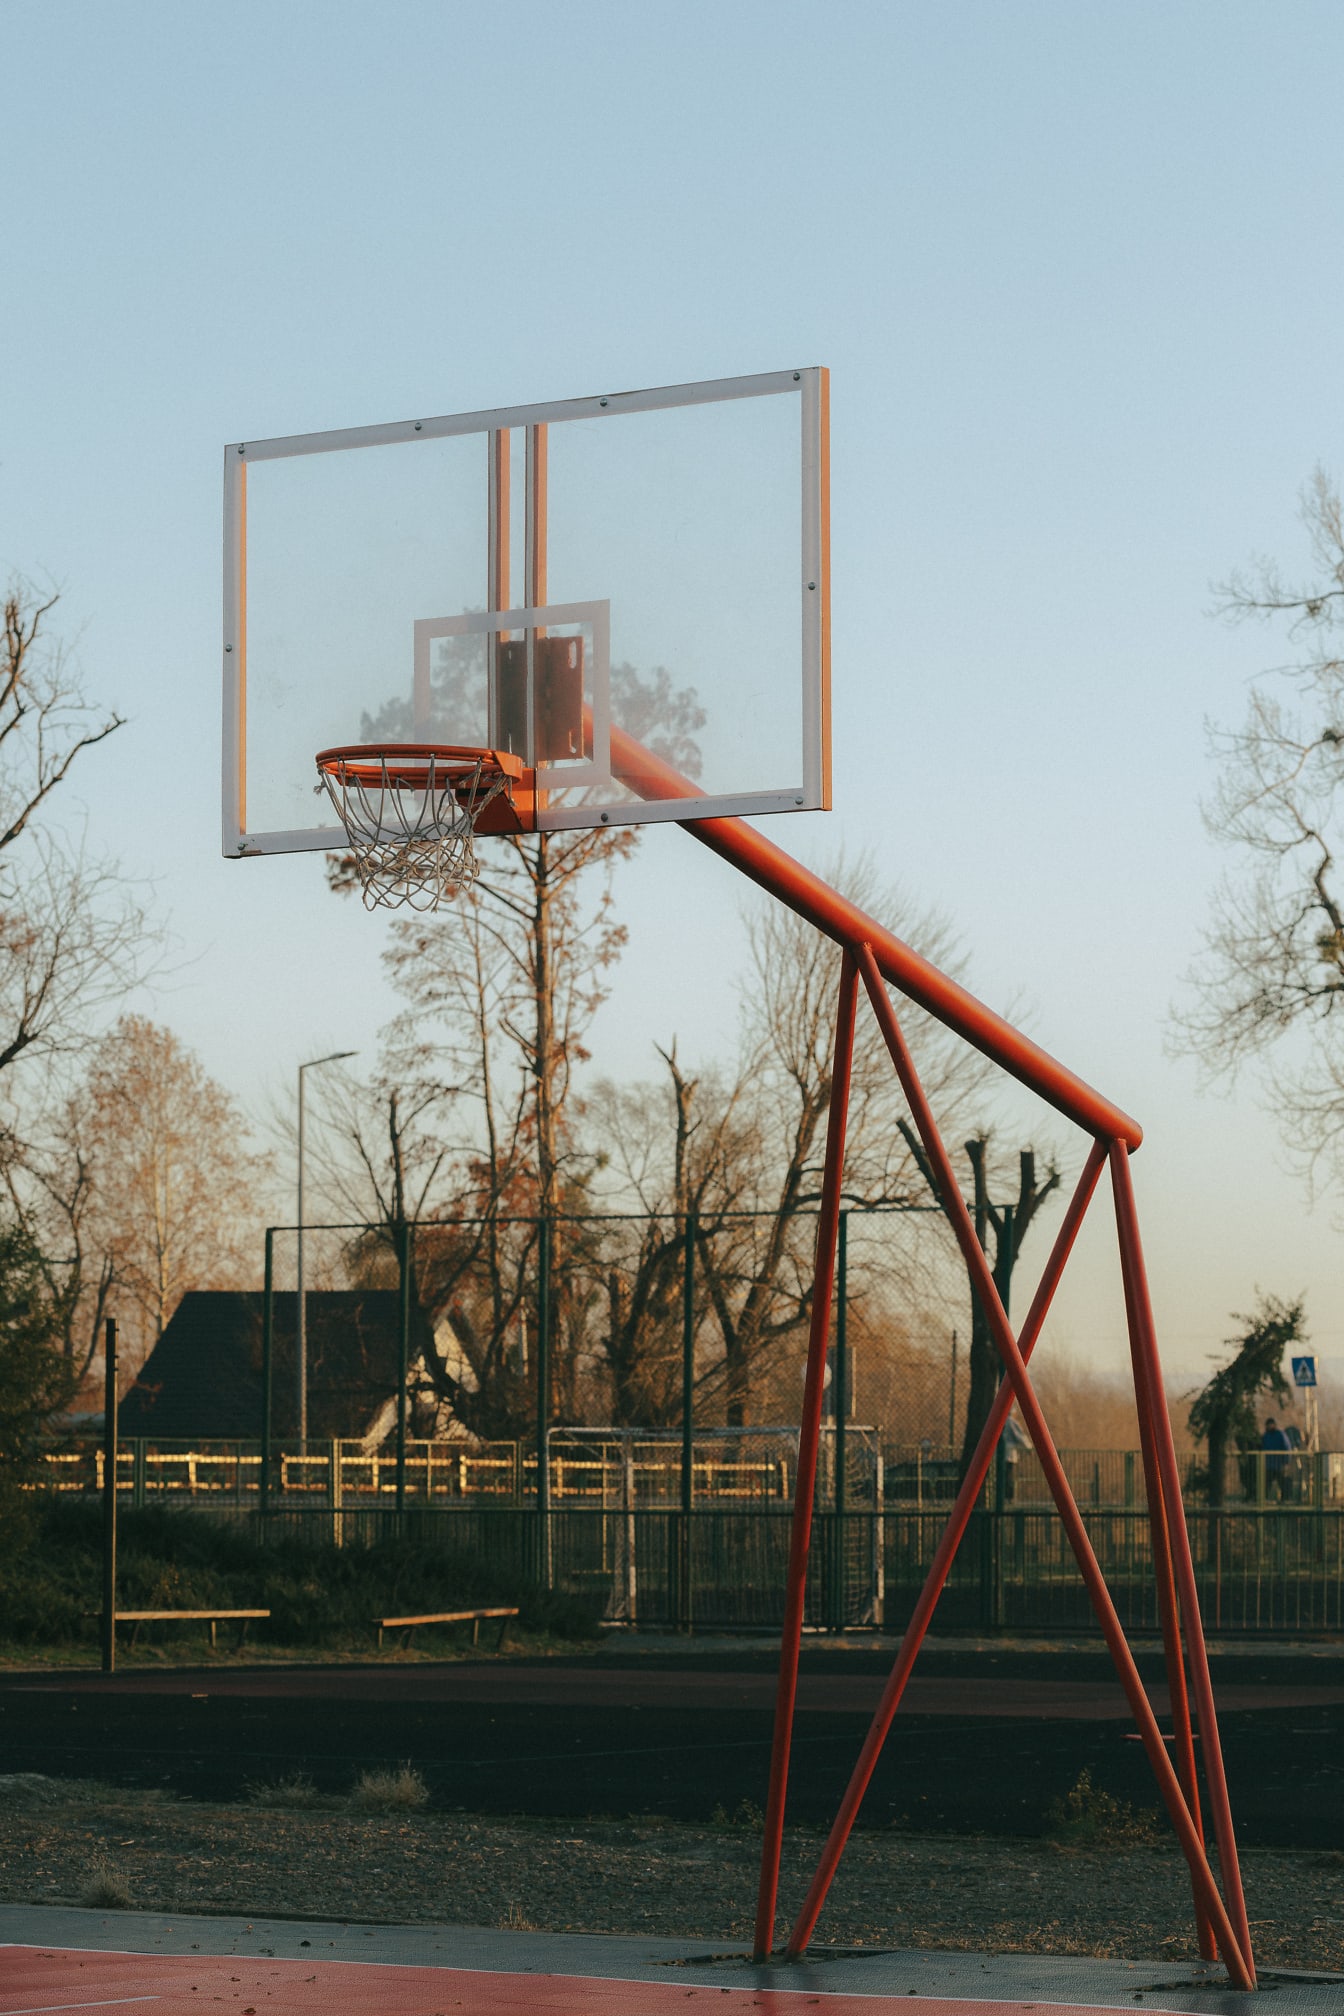 Prazno košarkaško igralište s košarom s crvenkastom metalnom konstrukcijom